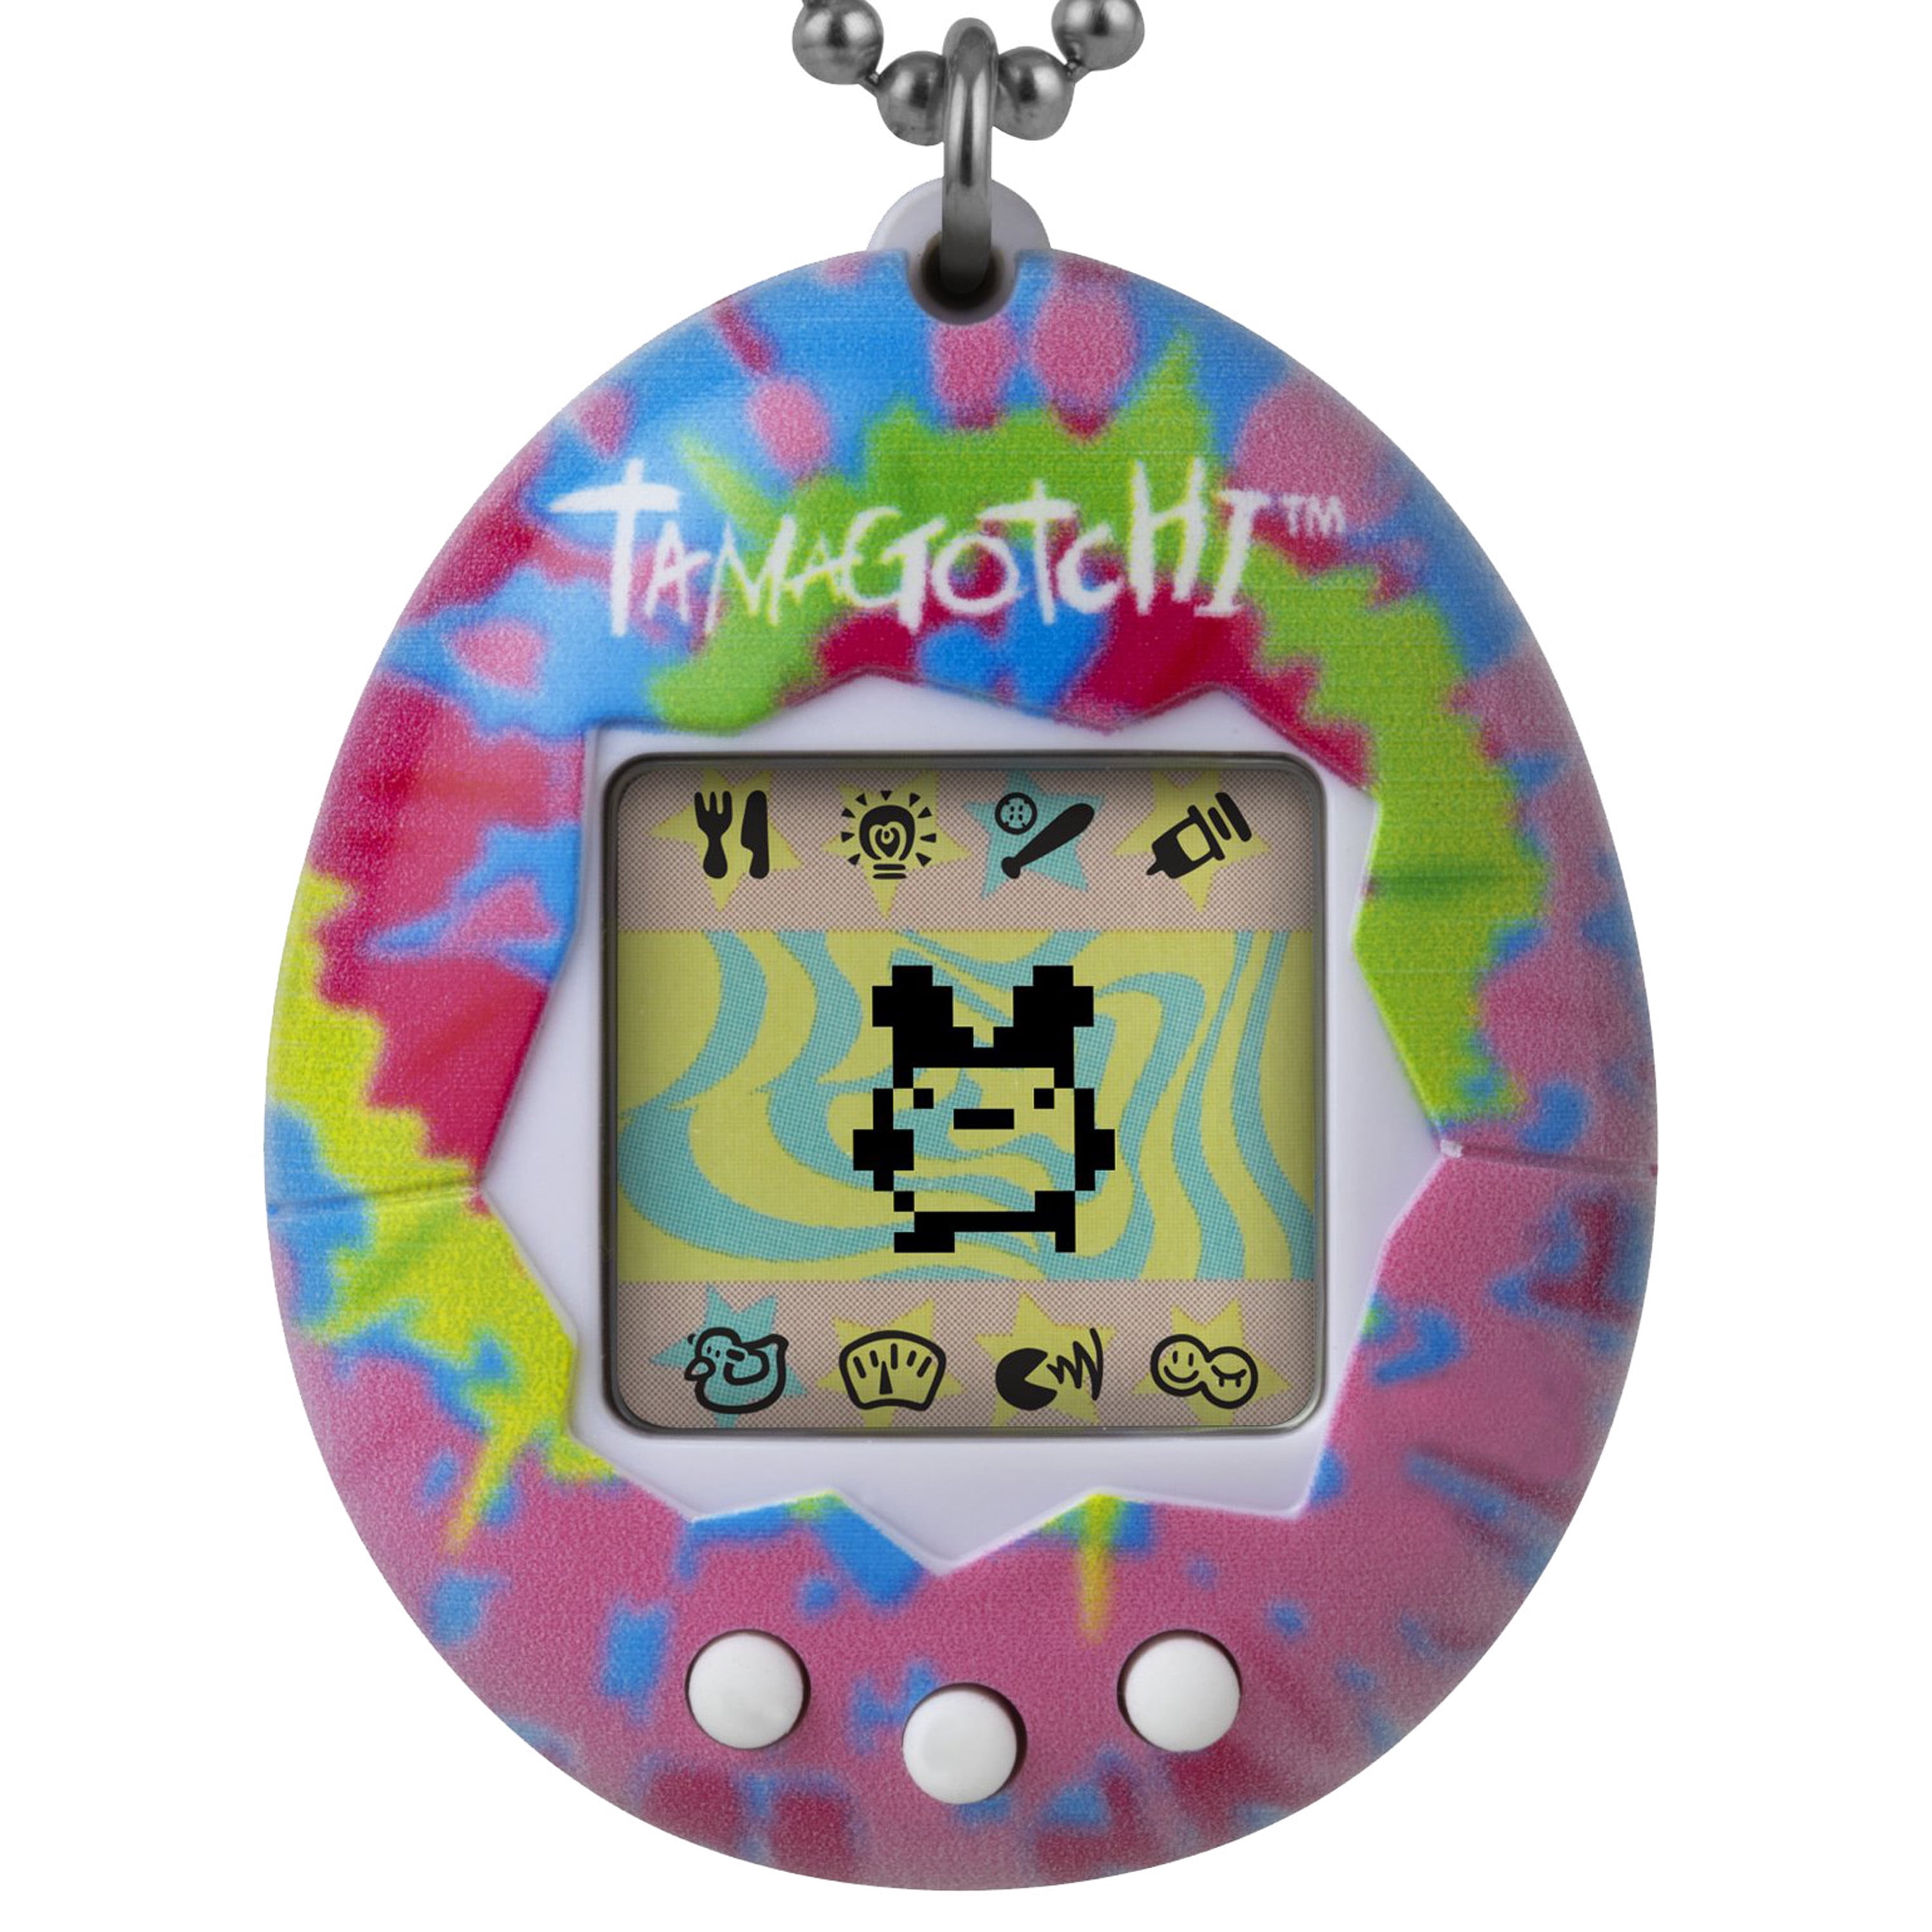 Bandai Tamagotchi Original Classic Digital Pet Bright Neon Lime NEW 